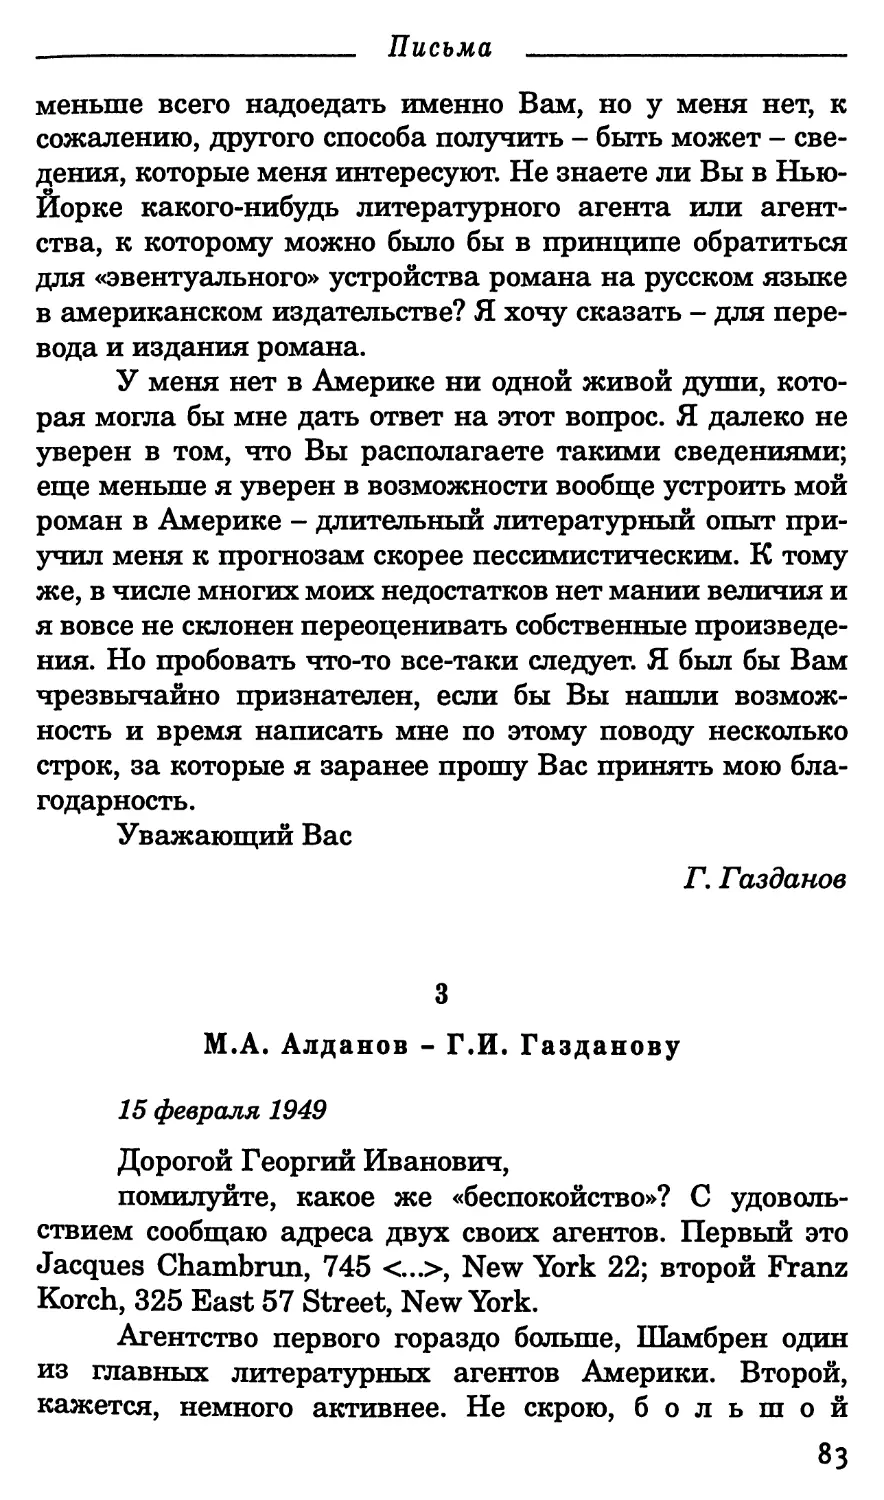 3. М.А. Алданов. - Г.И. Газданову 15 февраля 1949 г.